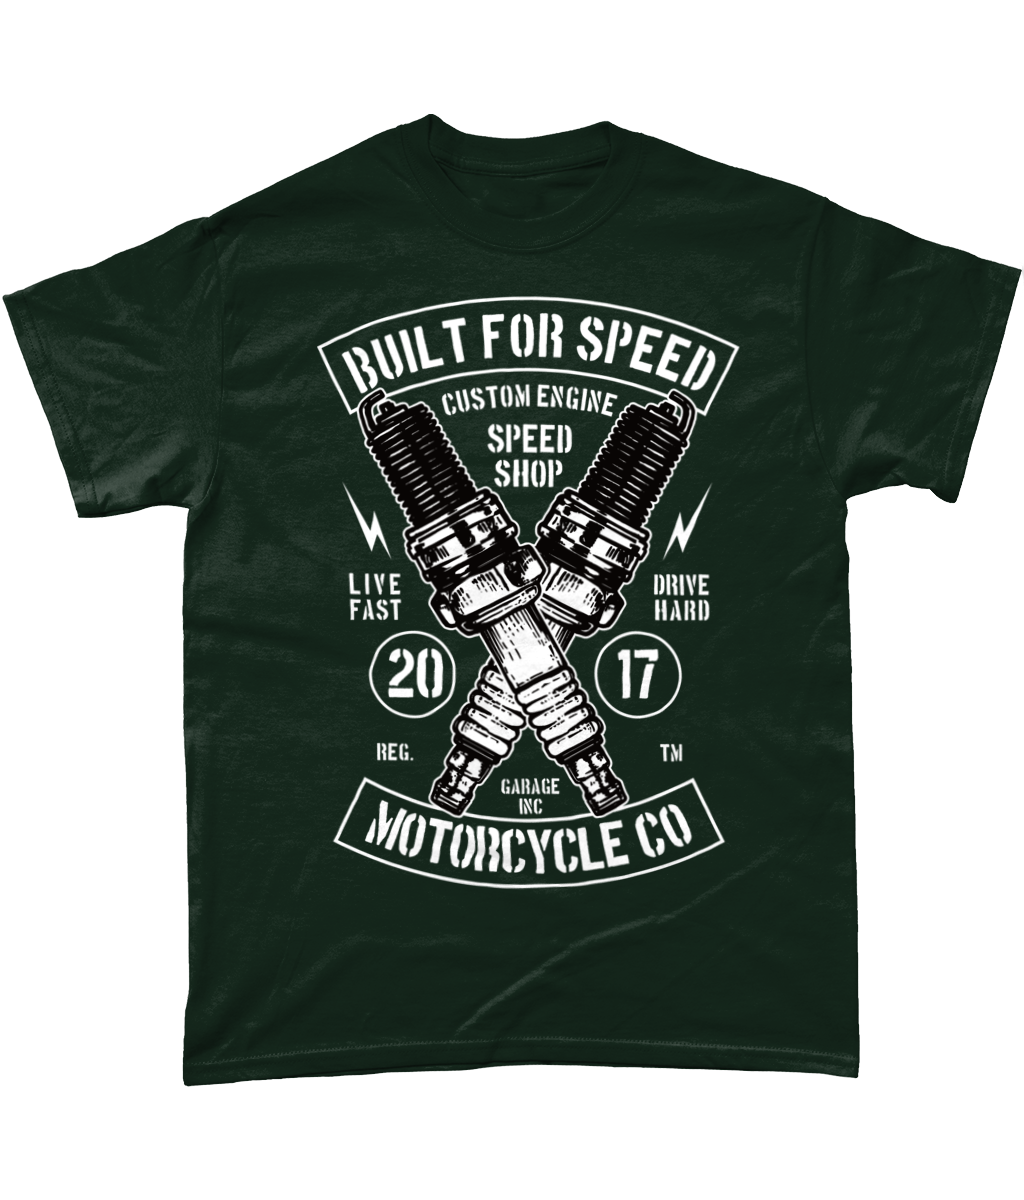 Built For Speed – Gildan Heavy Cotton T-shirt